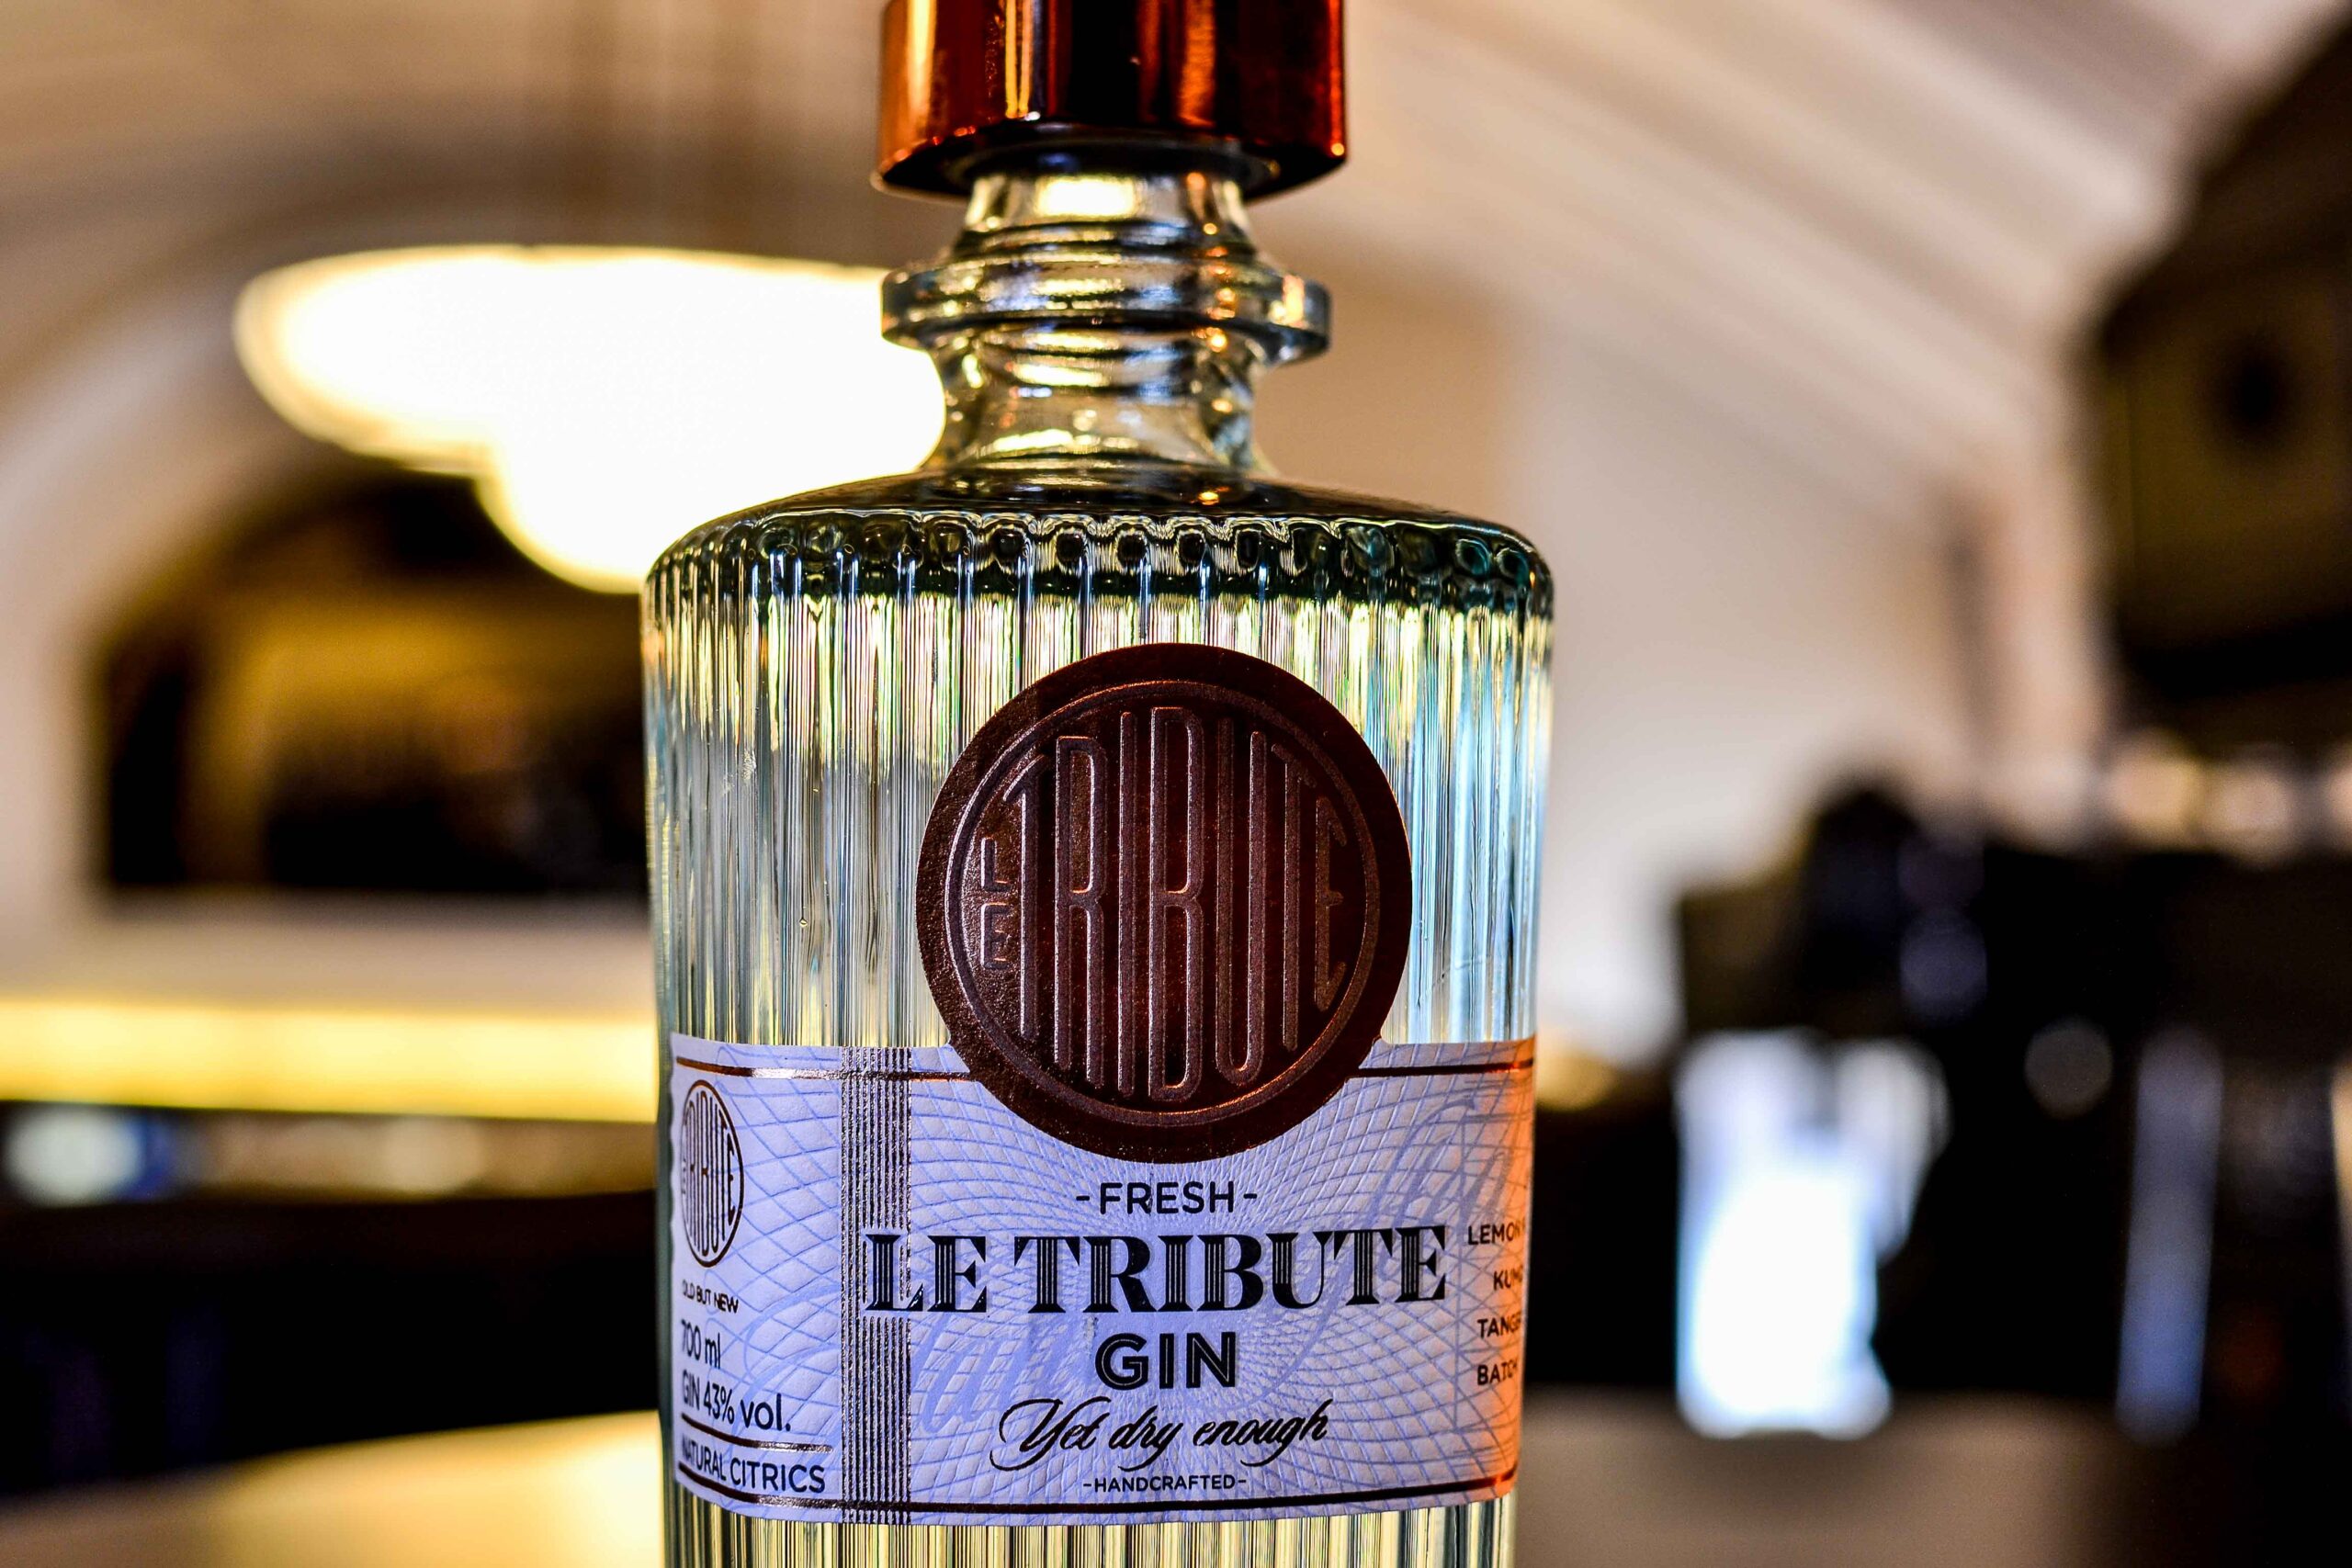 Le Tribute gin spirit review - παρουσίαση